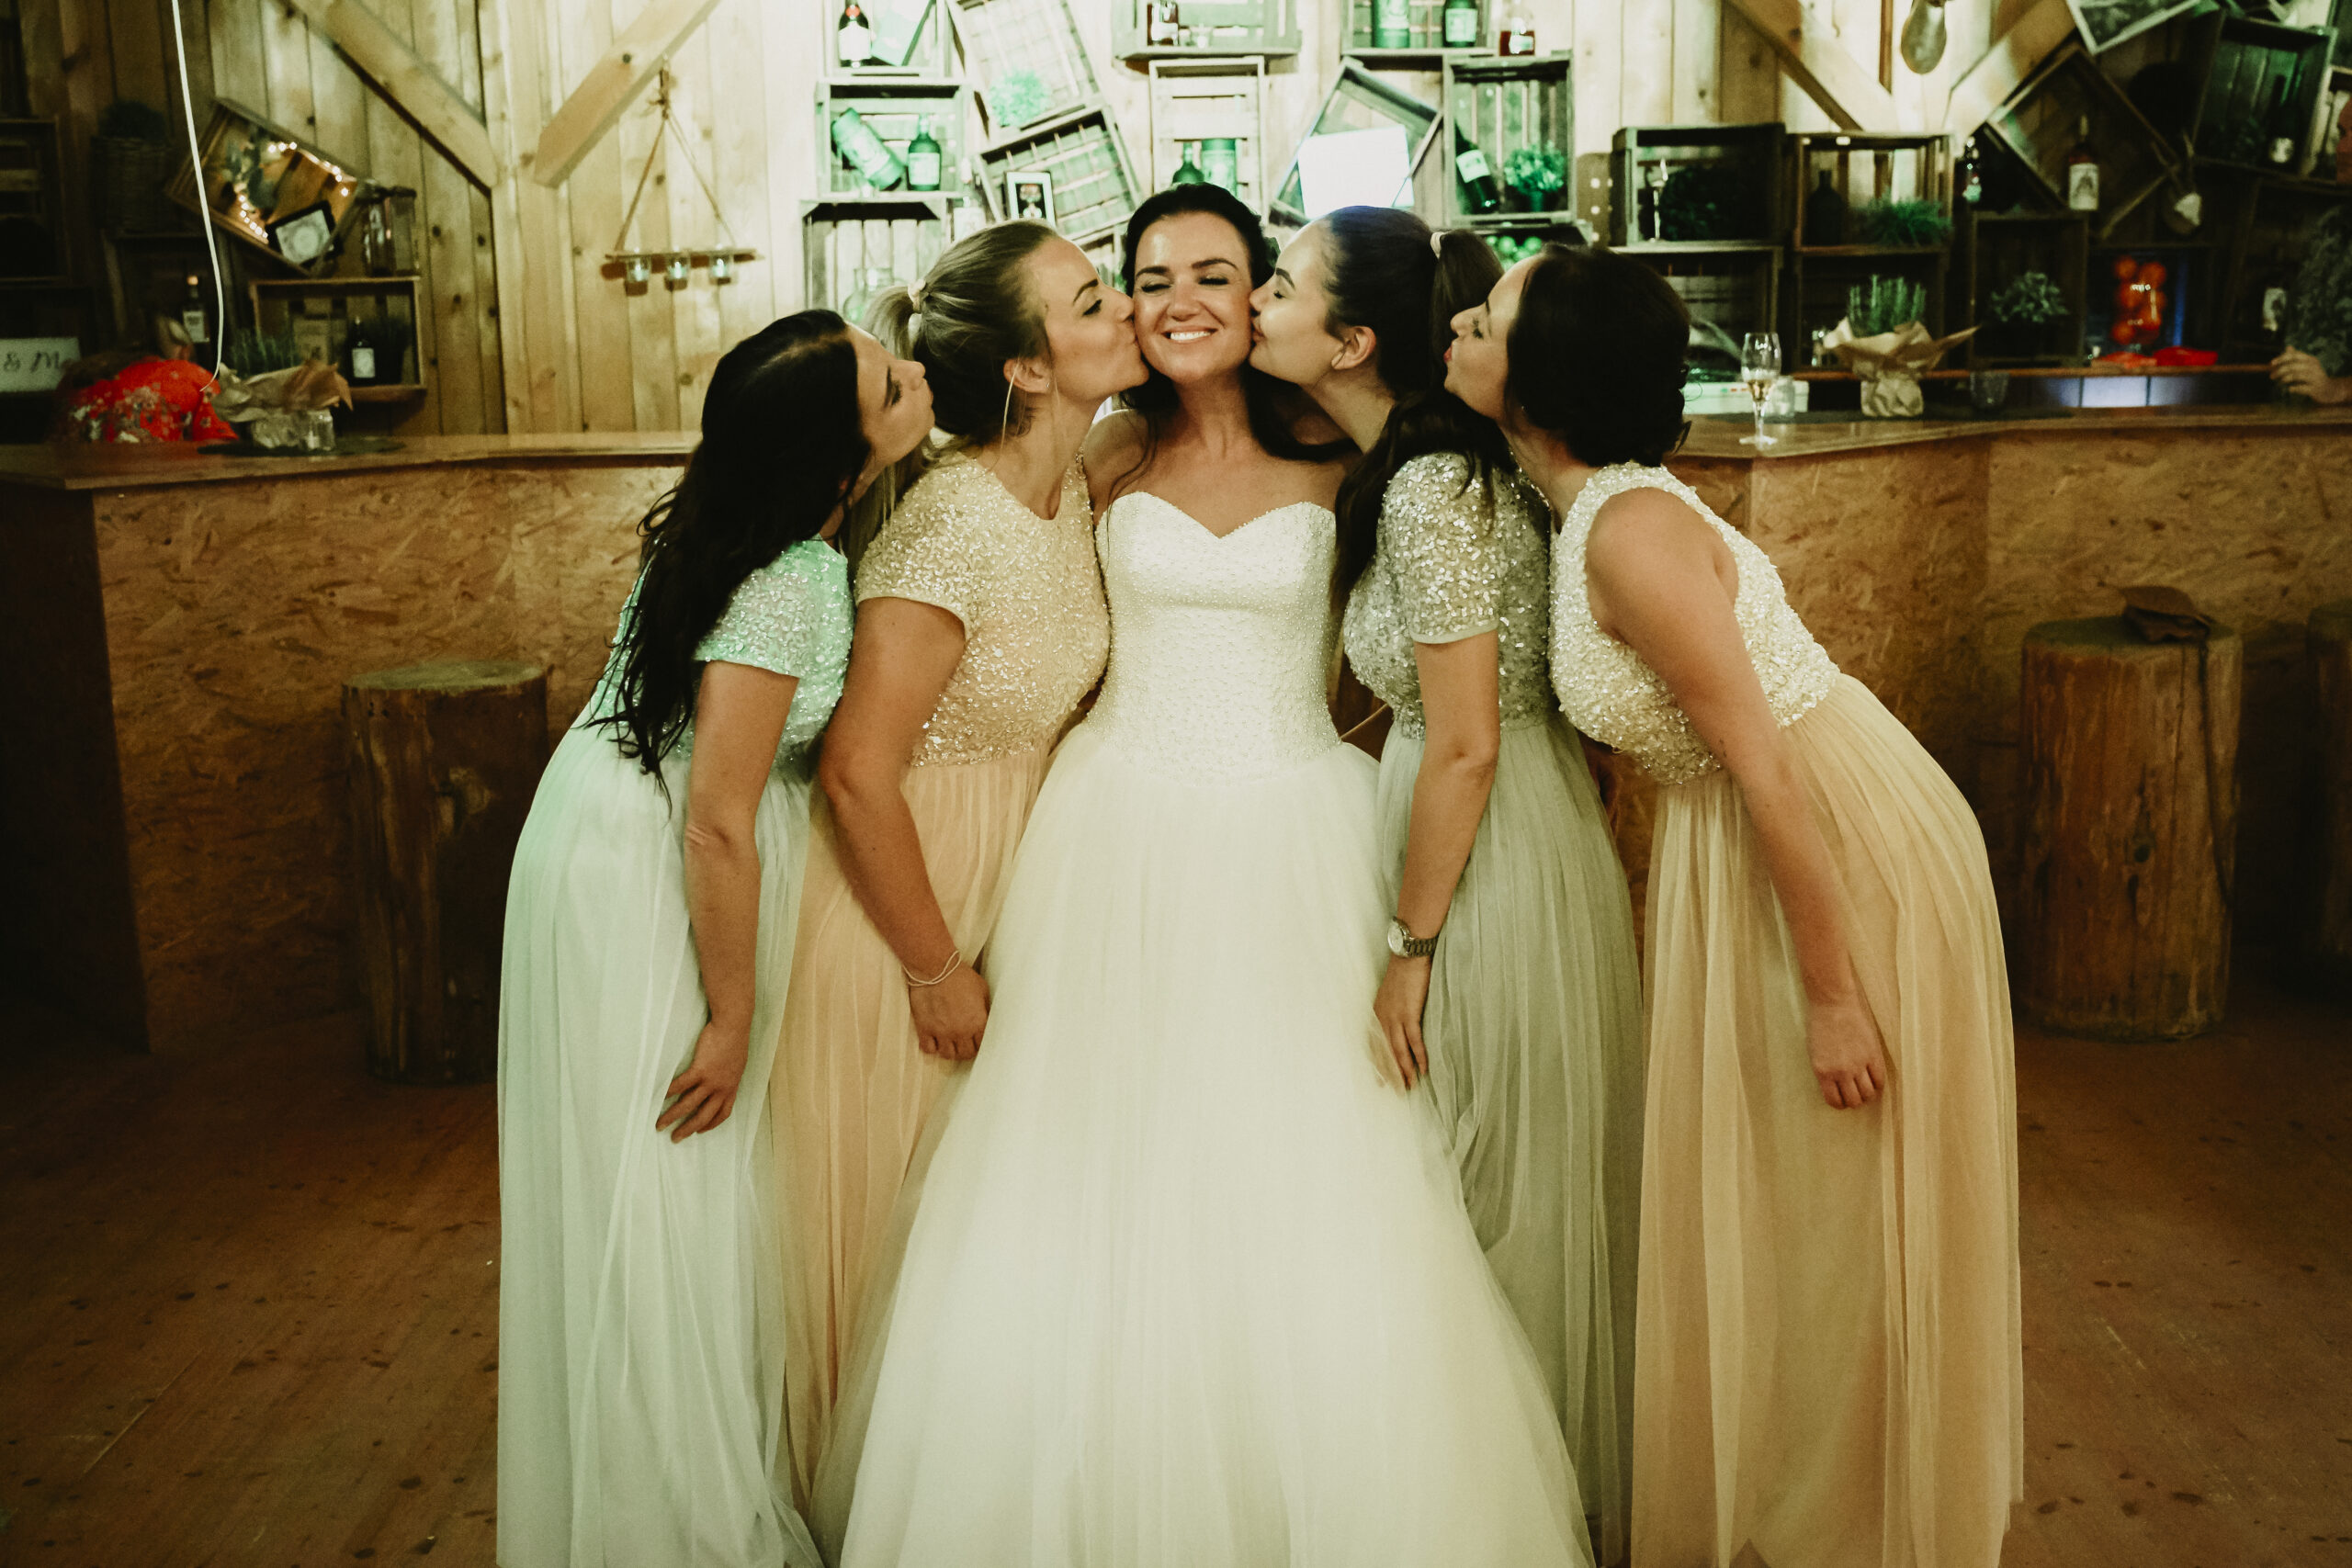 Die Brautjungfern geben in der Hochzeitslocation am Abend der Braut einen Kuss